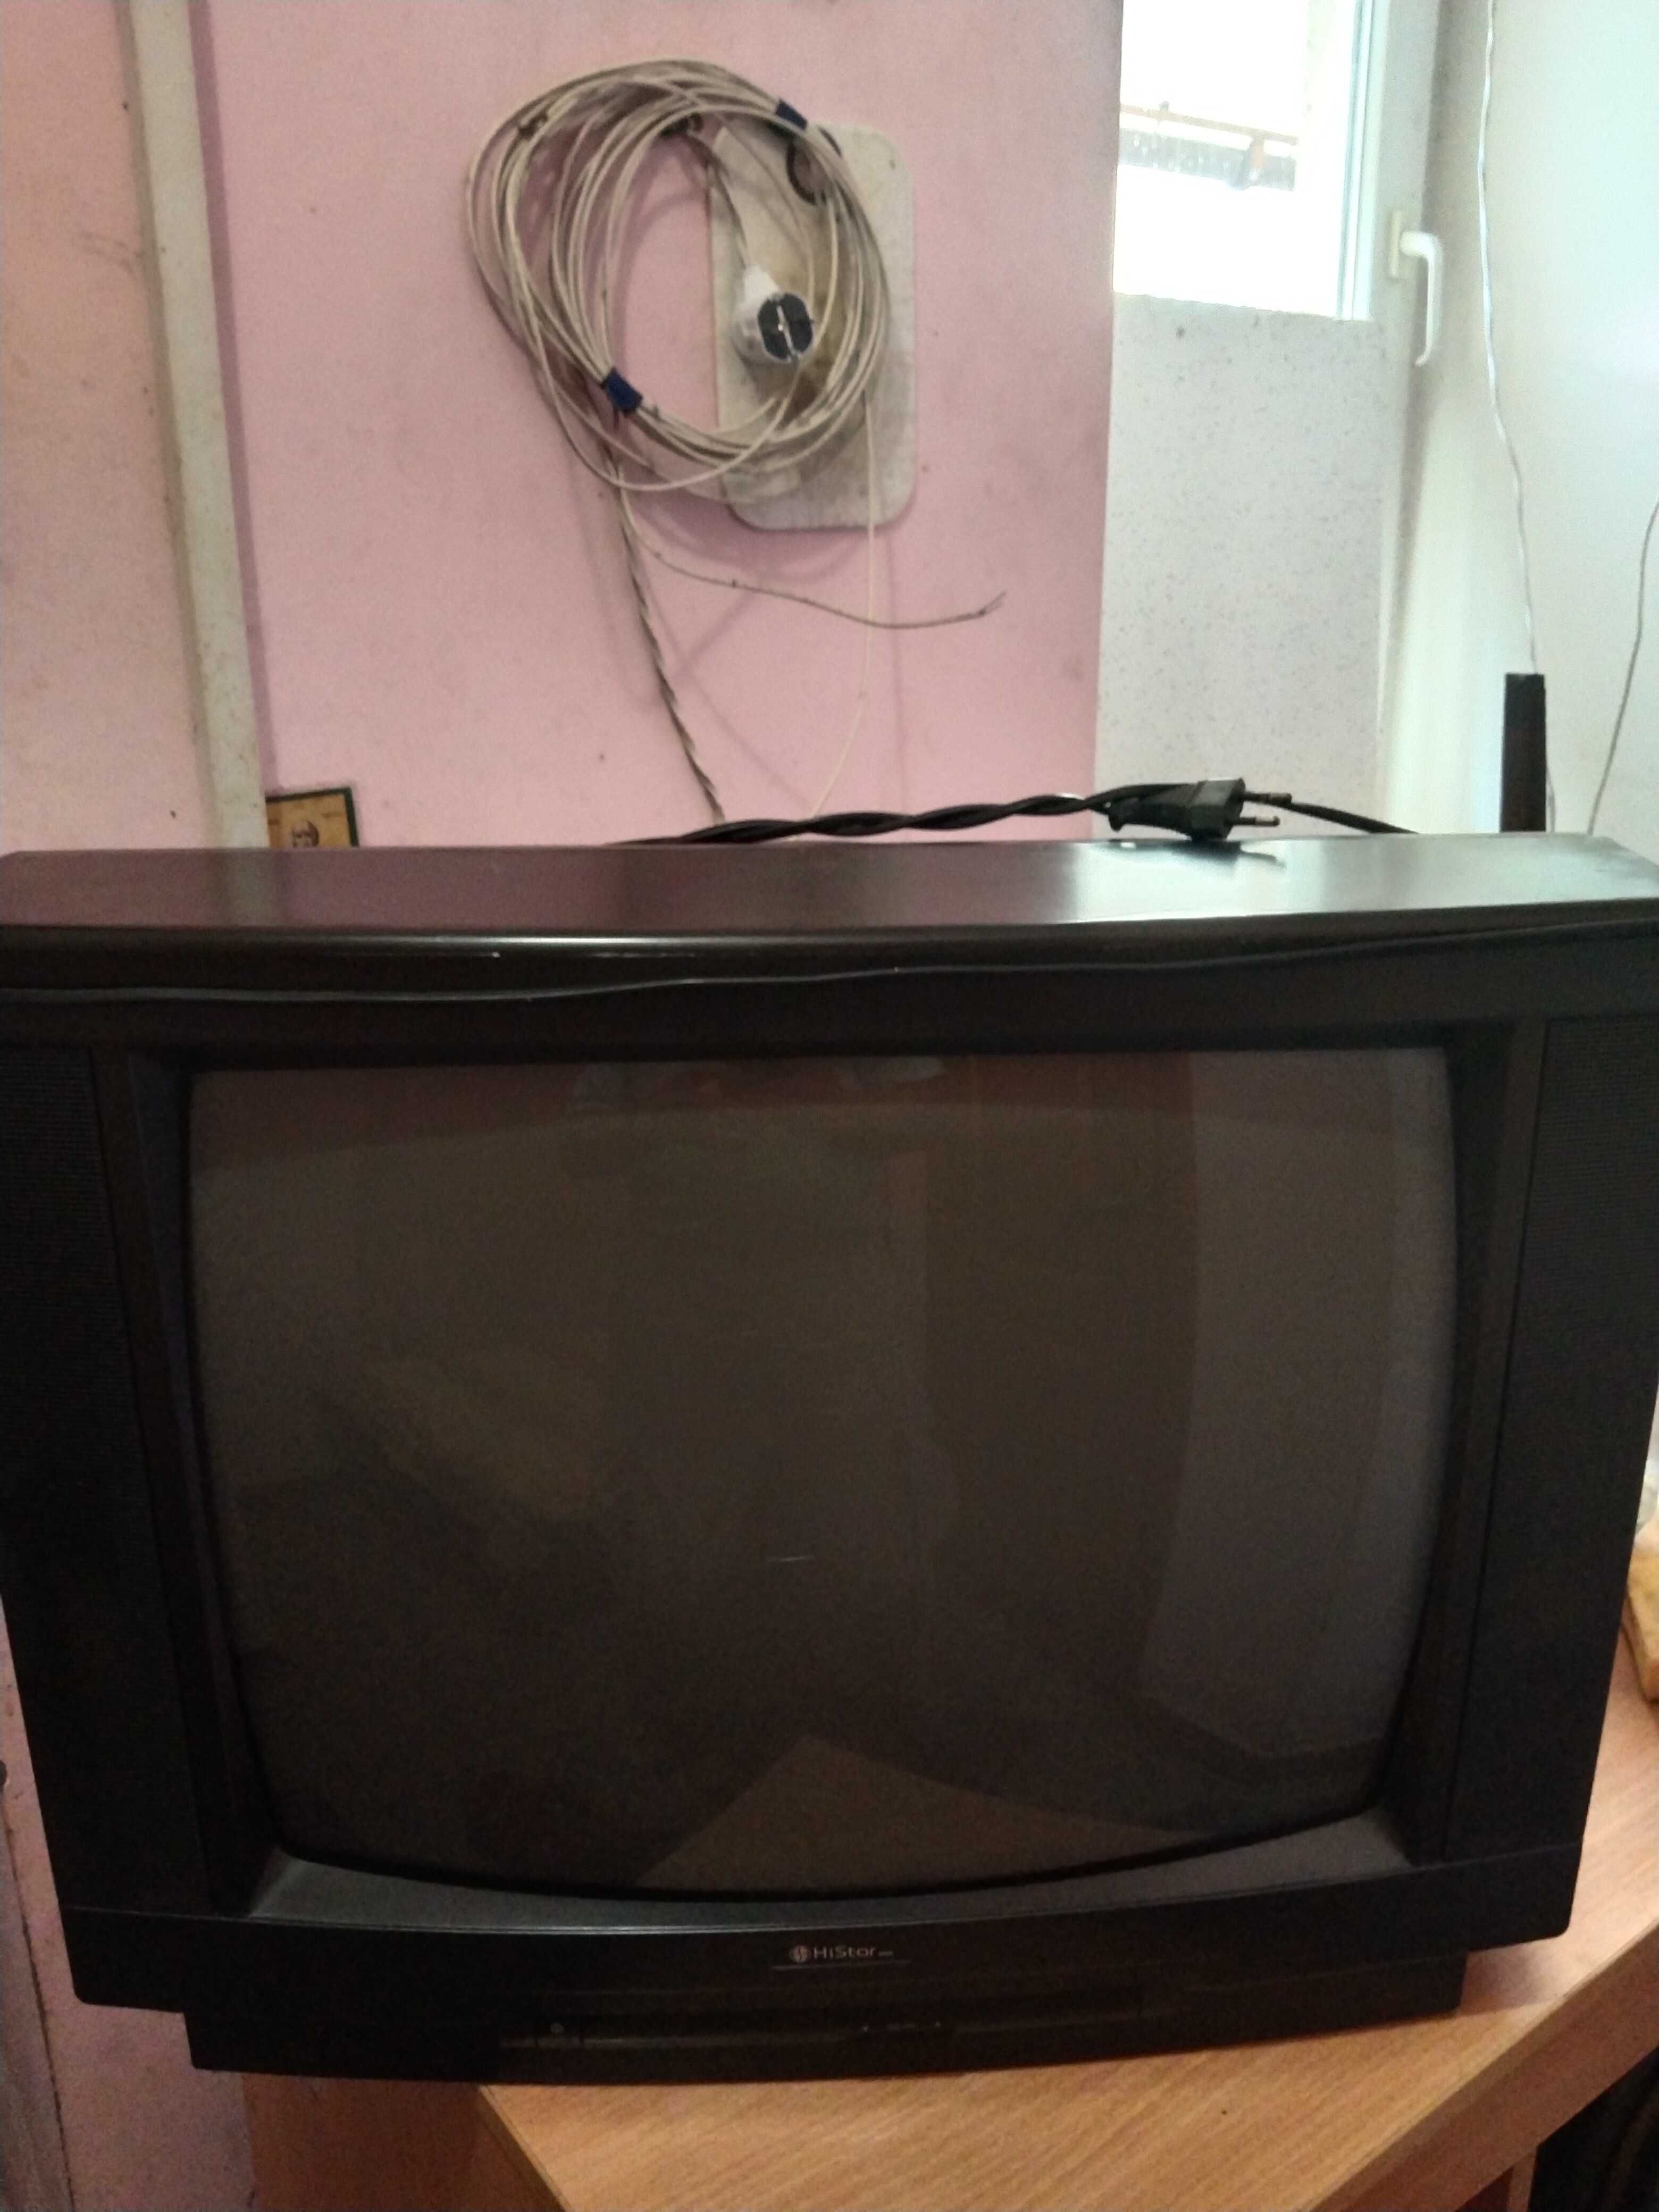 Продам цветной телевизор